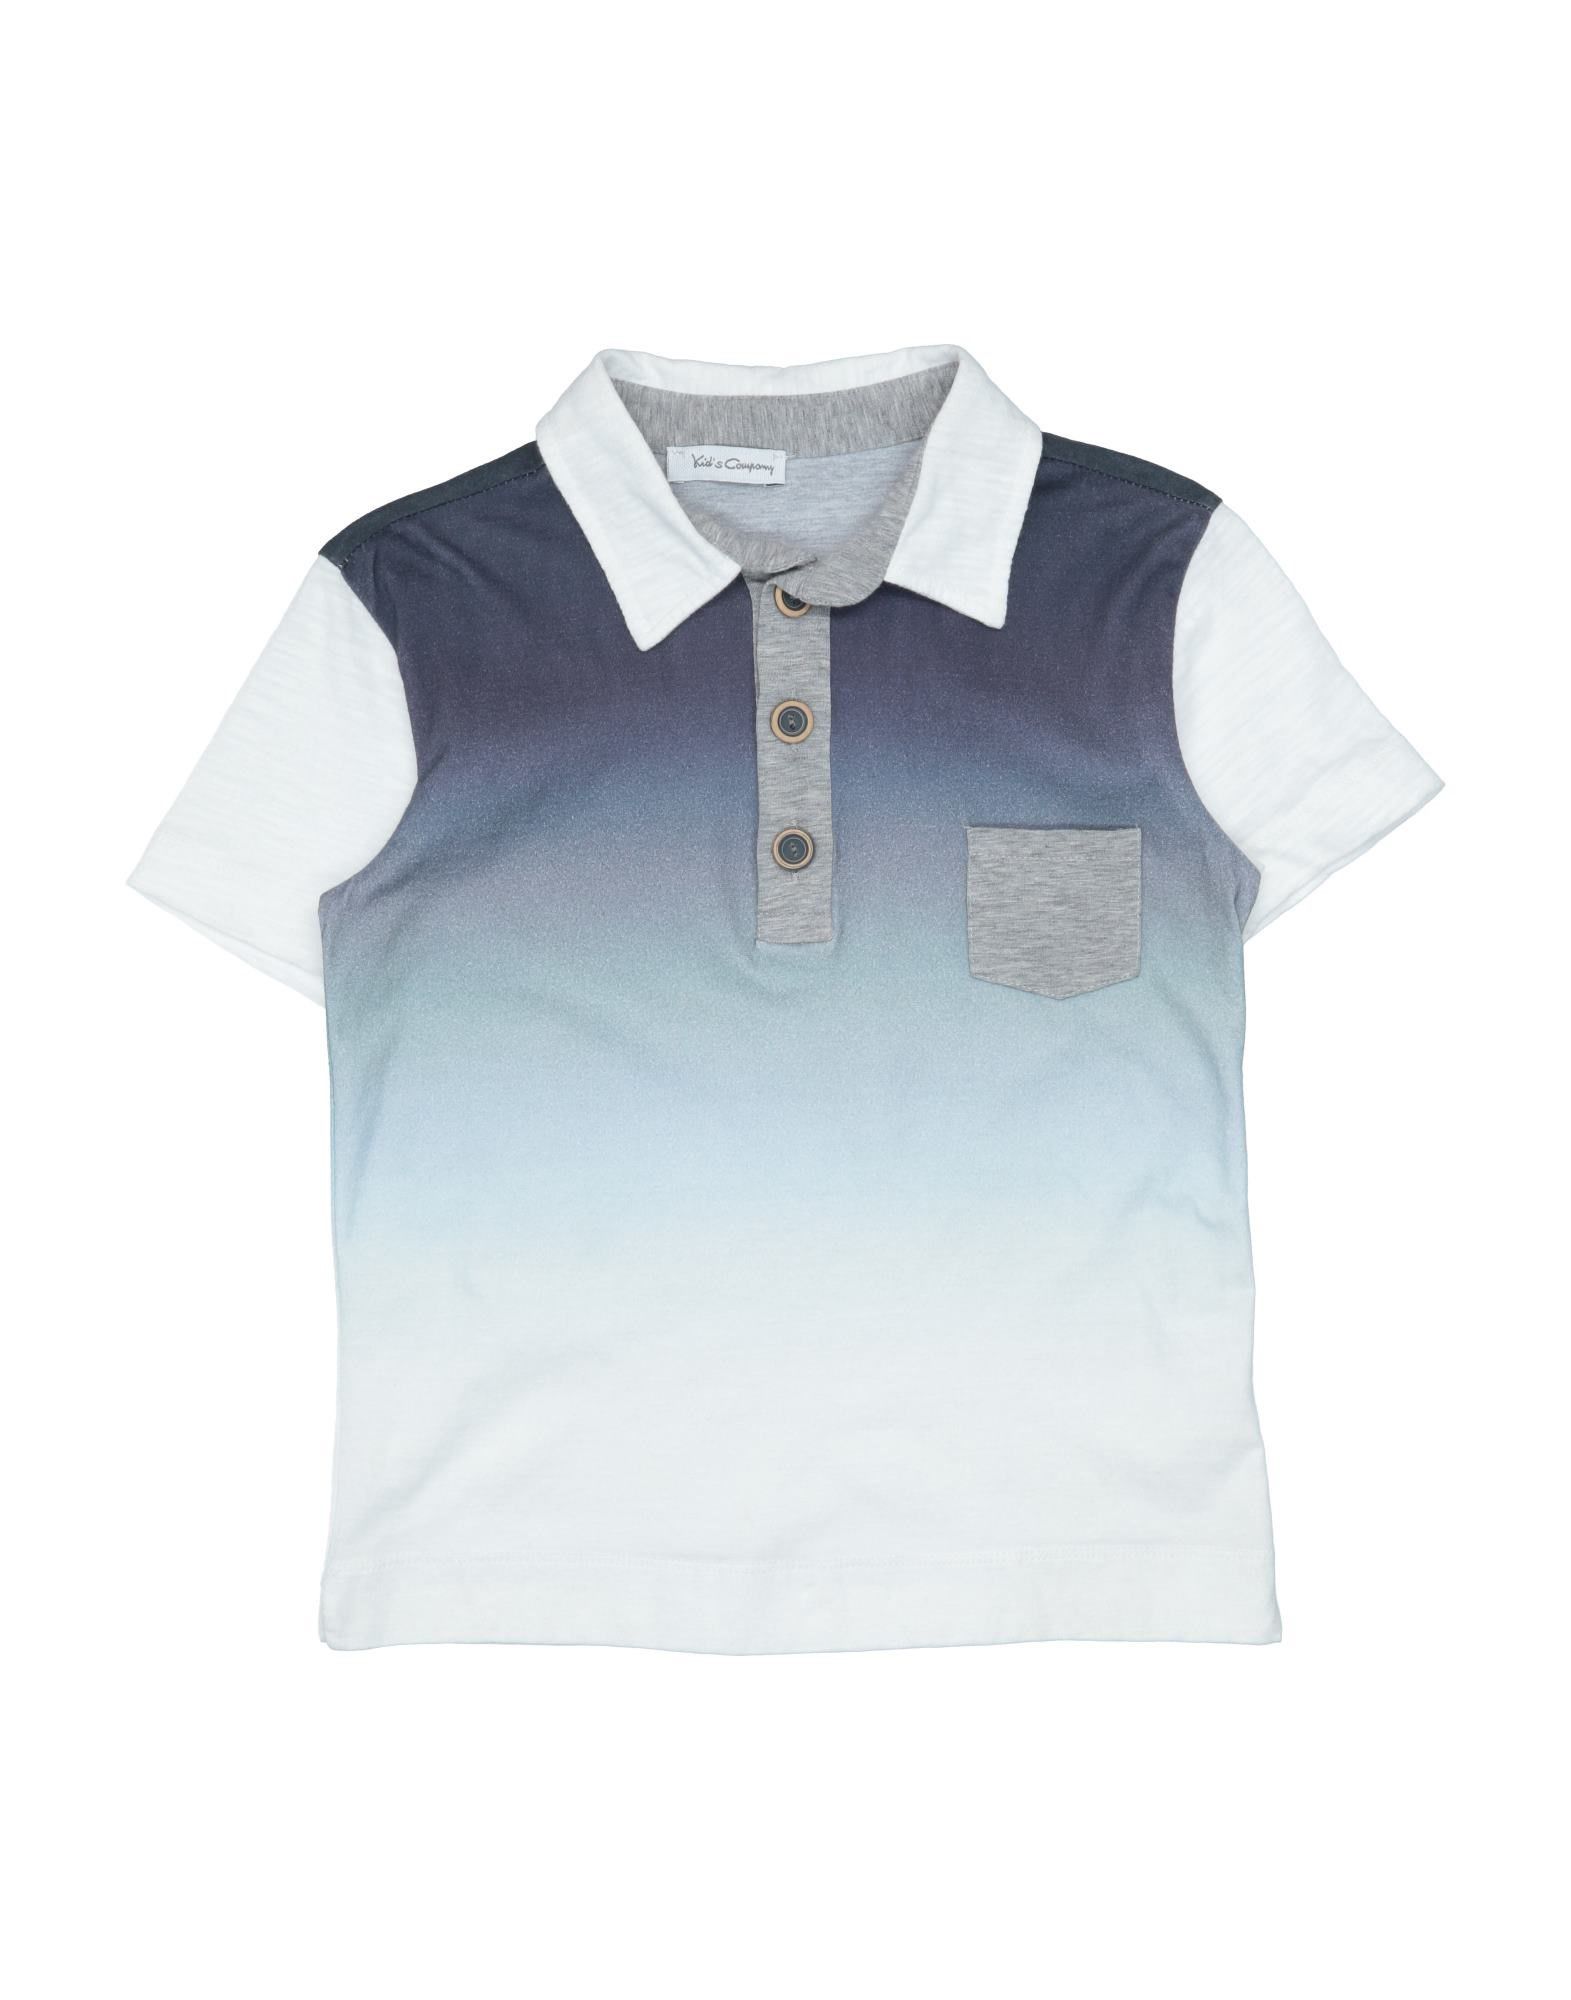 Kid's Company Kids' Polo Shirts In Slate Blue